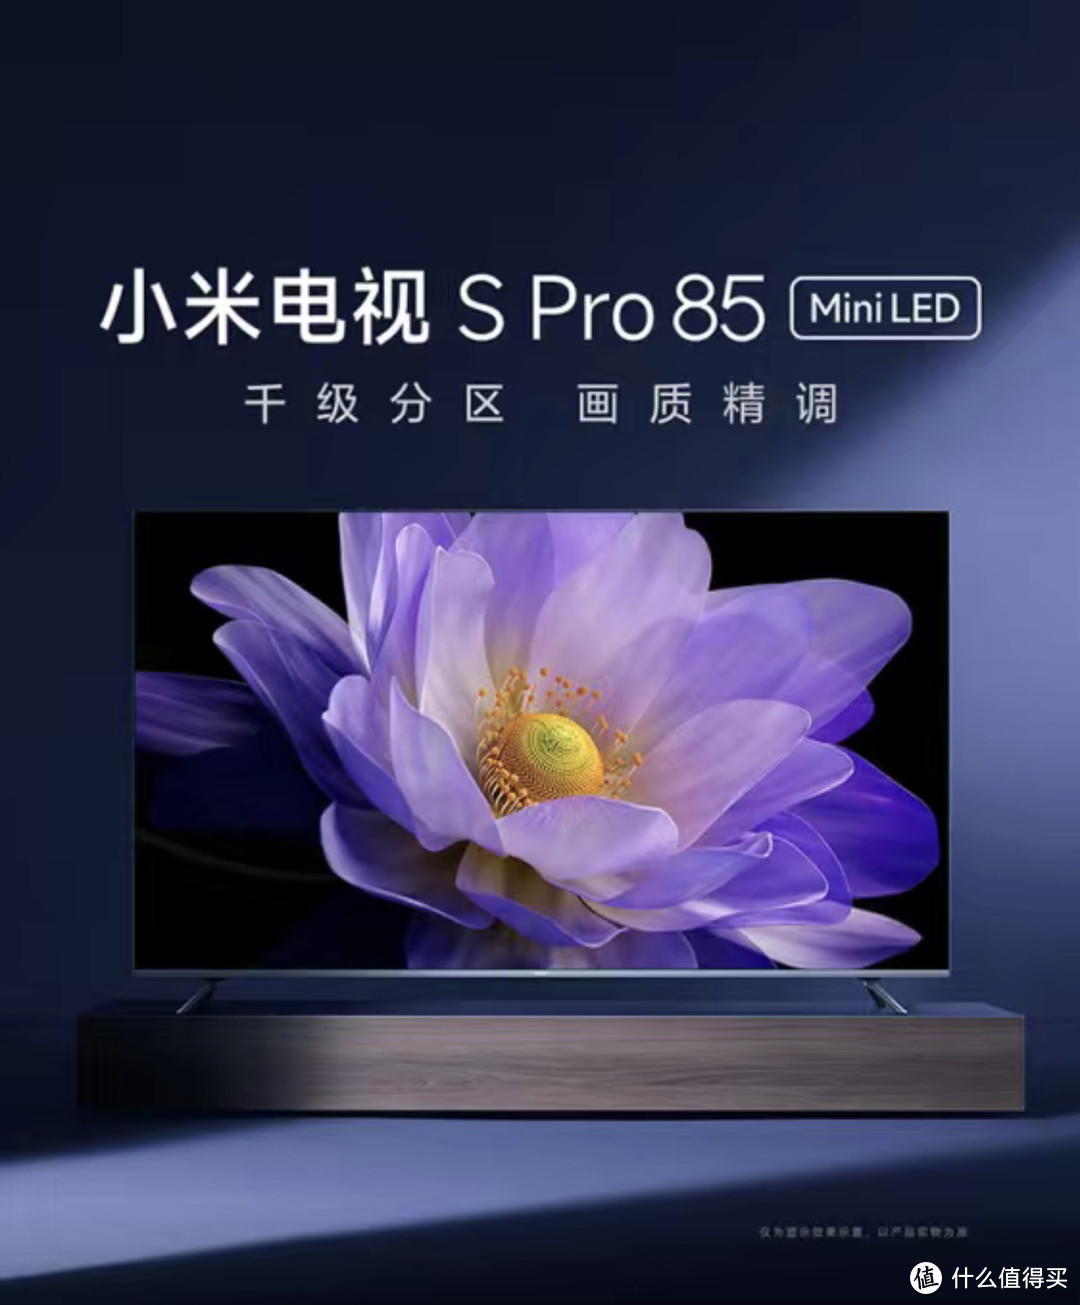 小米电视S Pro 85 MiniLED：打造沉浸式视听新体验